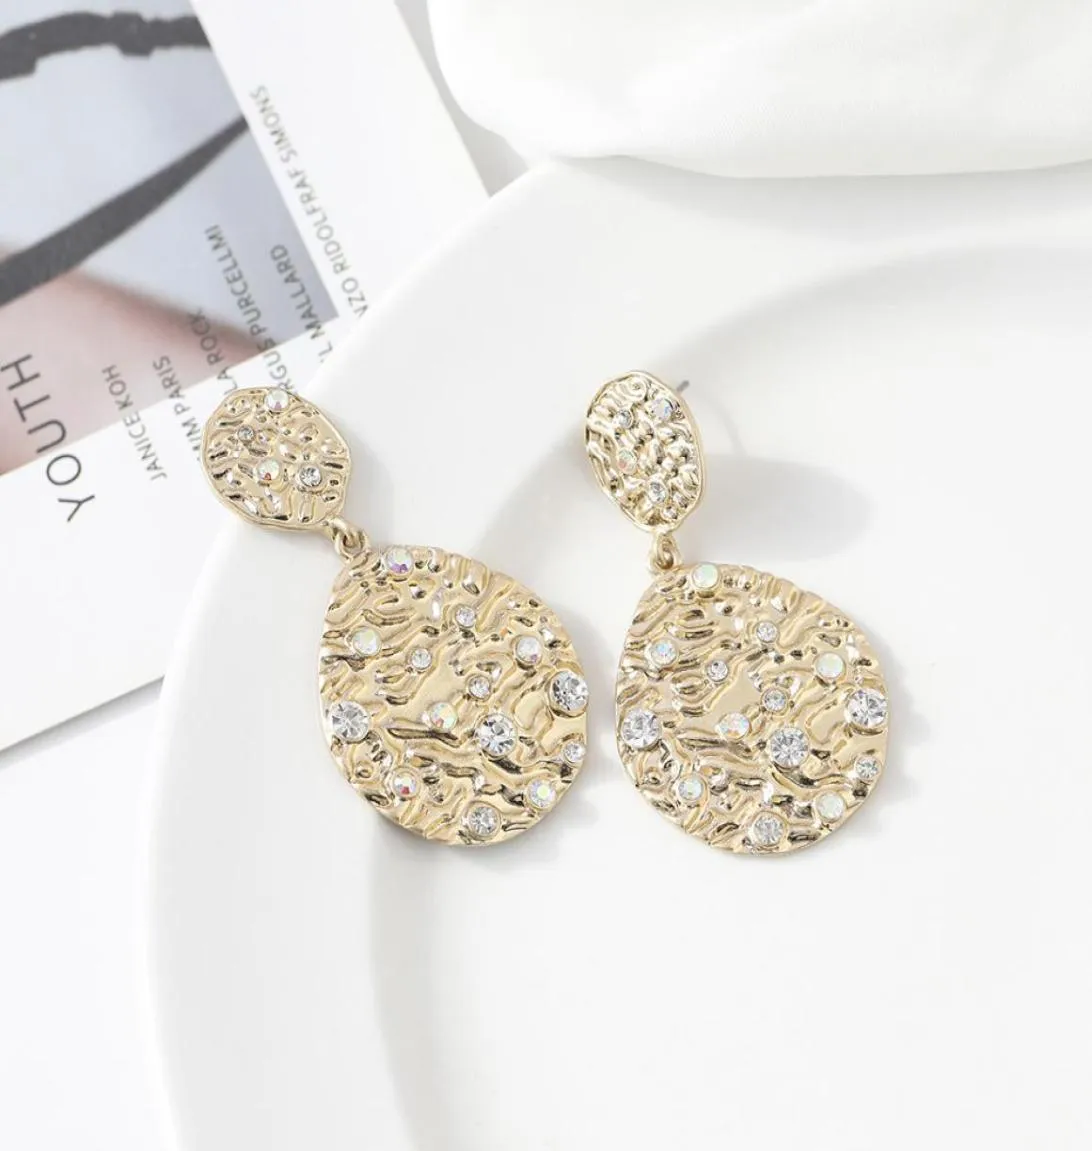 StudFashion simple alloy dropshaped earrings women039s popular retro earring jewelry jewelry8333616